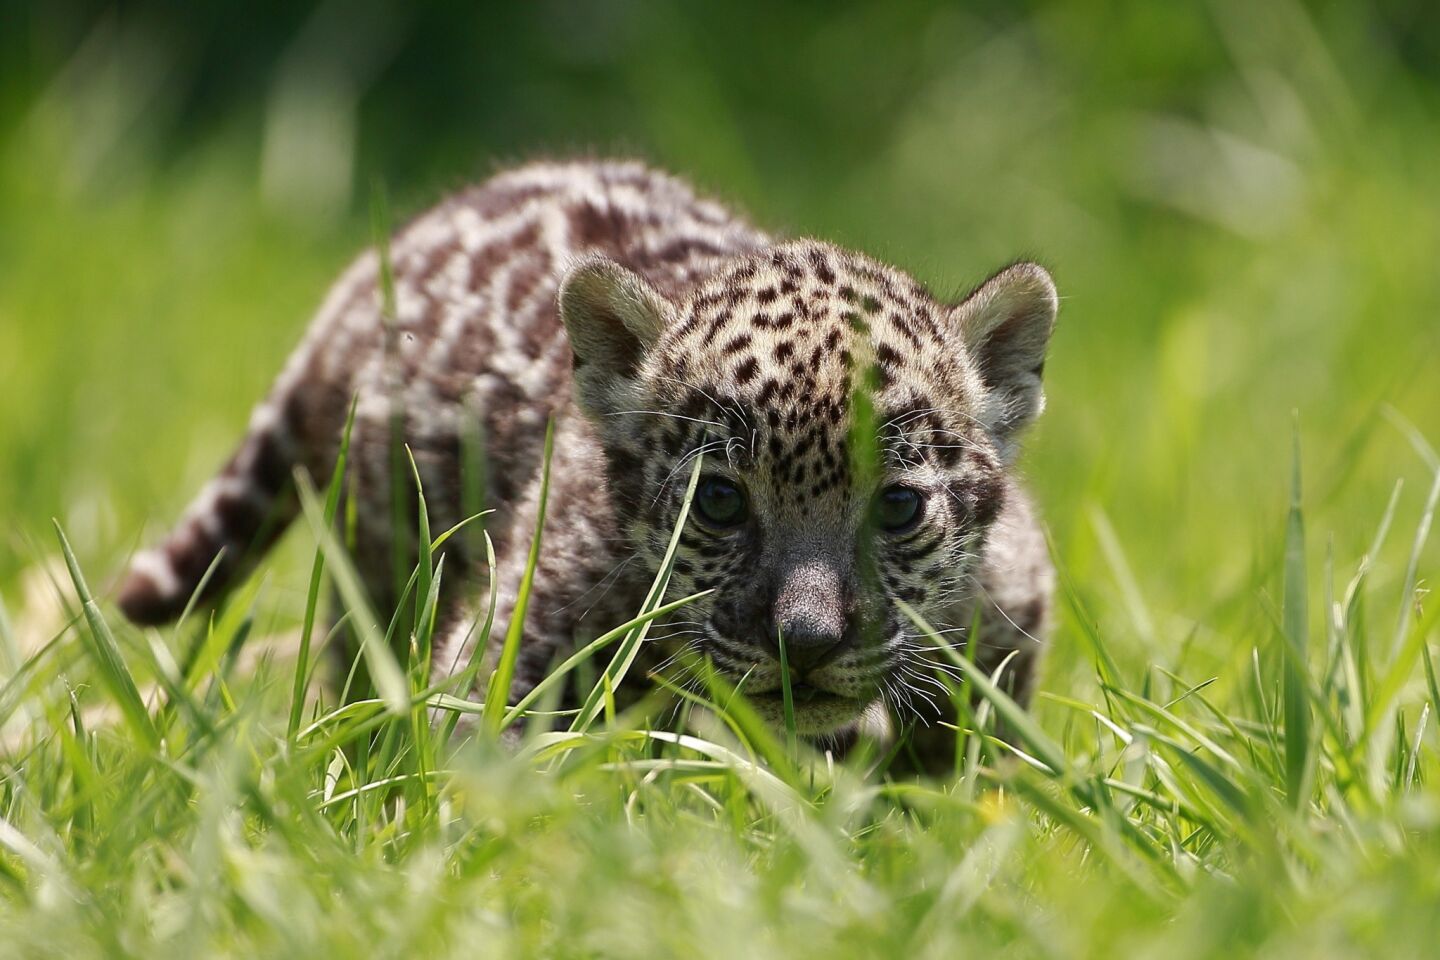 El número de ejemplares de jaguar ha disminuido de manera drástica con el riesgo de que desaparezca por completo de la Tierra, por ello está prohibida la caza, captura, transporte, posesión y comercio del jaguar, o de productos y subproductos de esta especie.